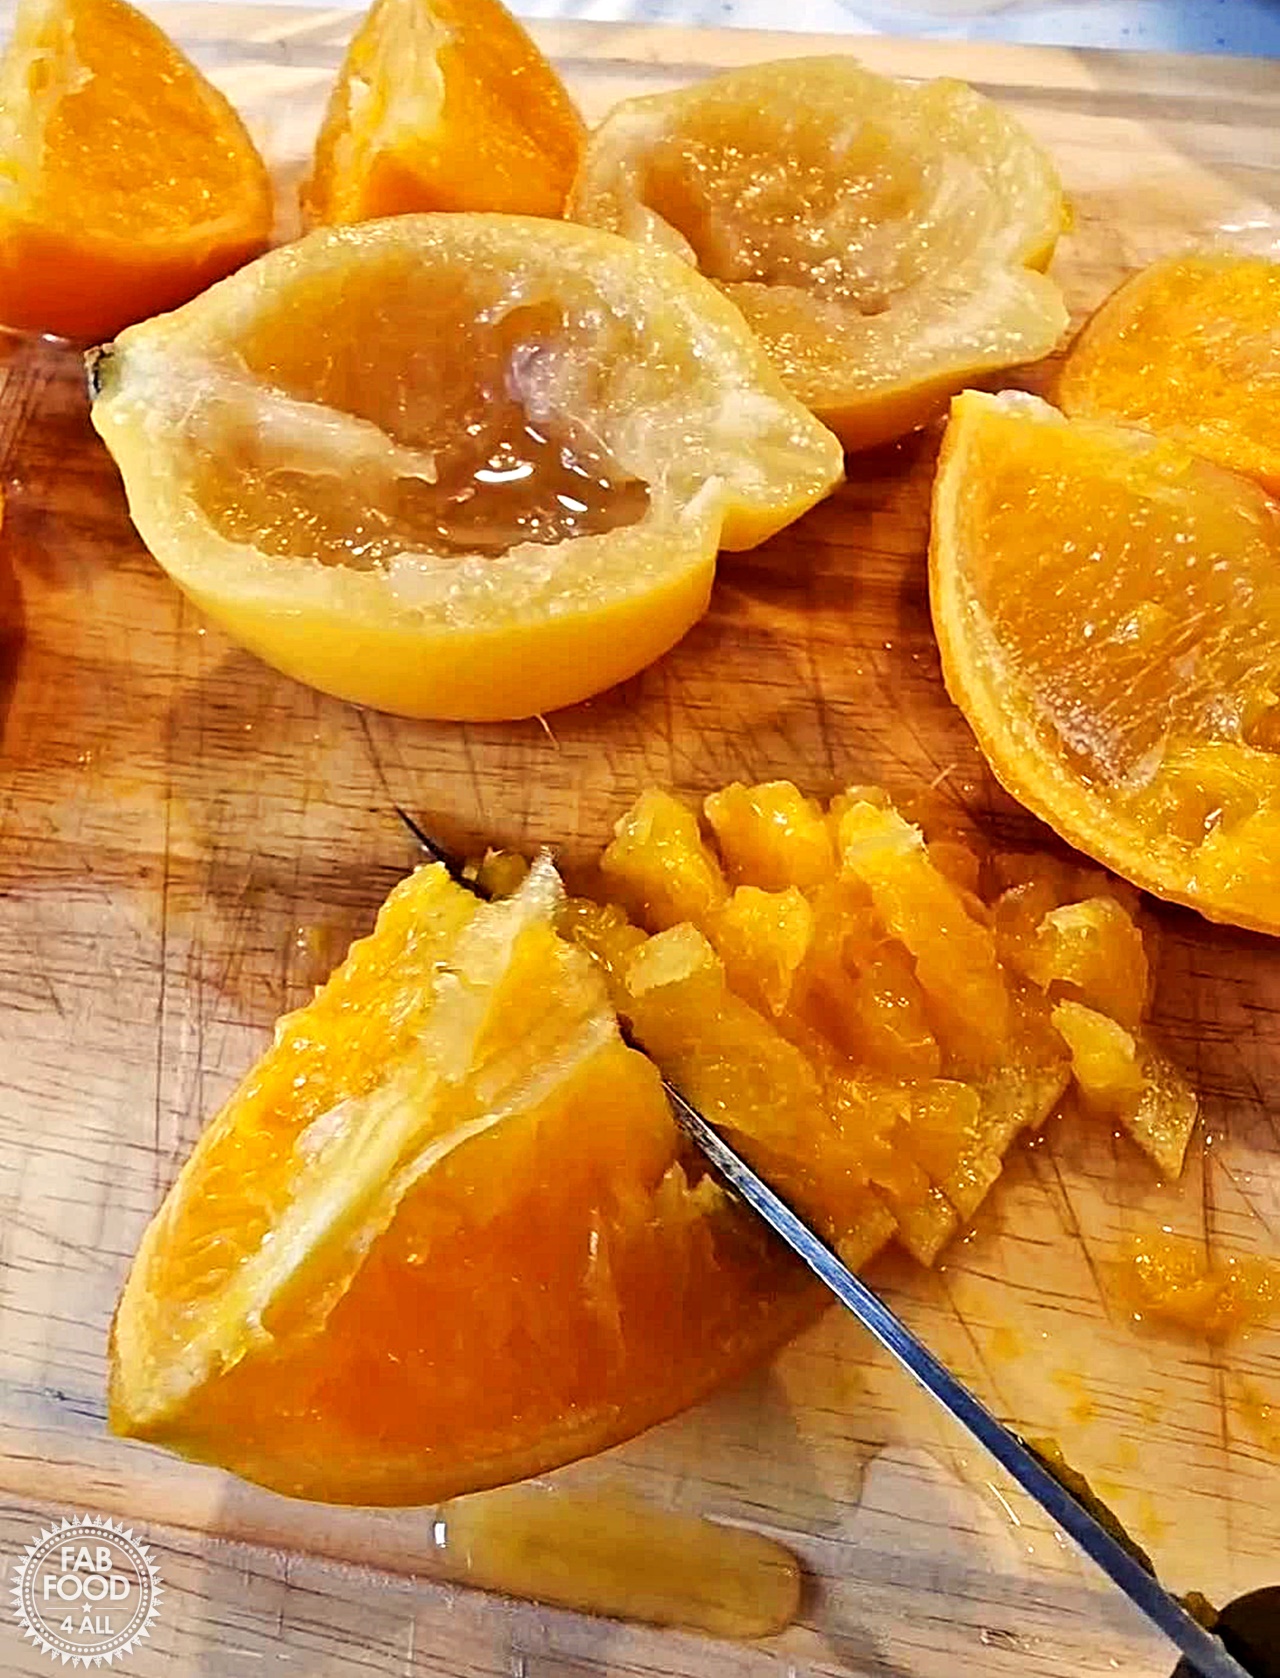 Slicing up orange and lemon rind quarters after boiling whole fruits.